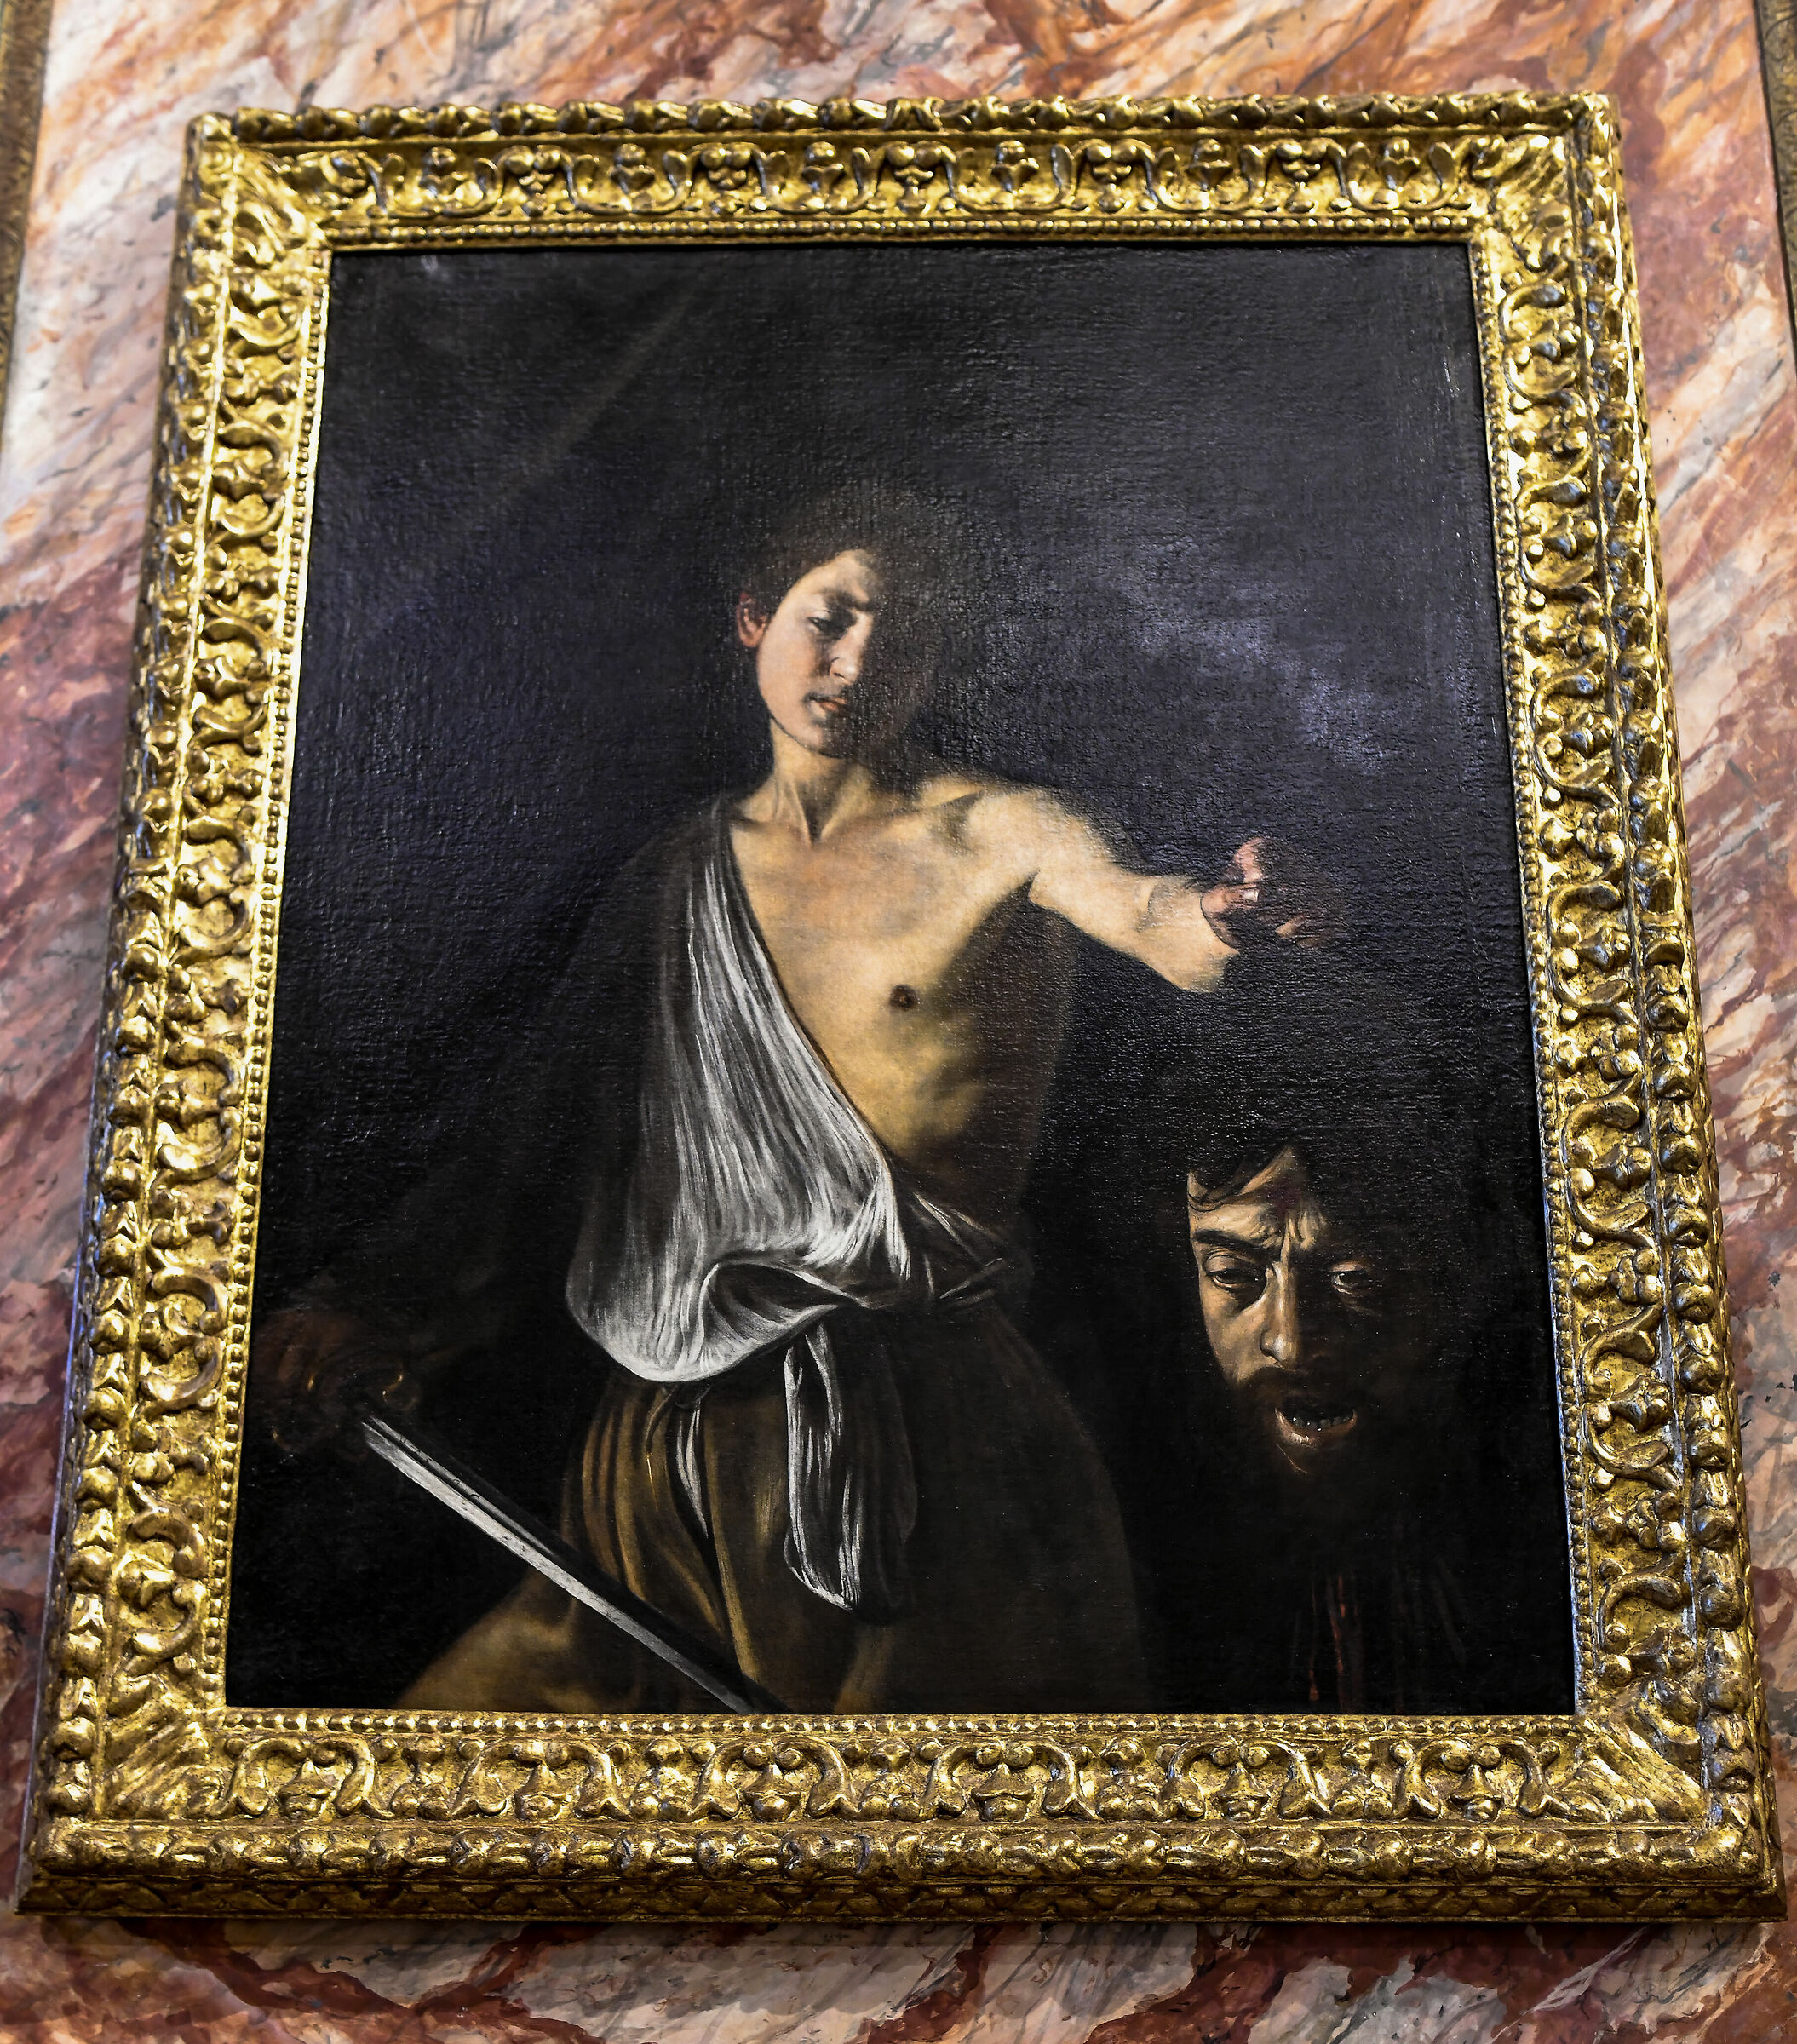 Borghese-Caravaggio Gallery,"David with Goliath's head...